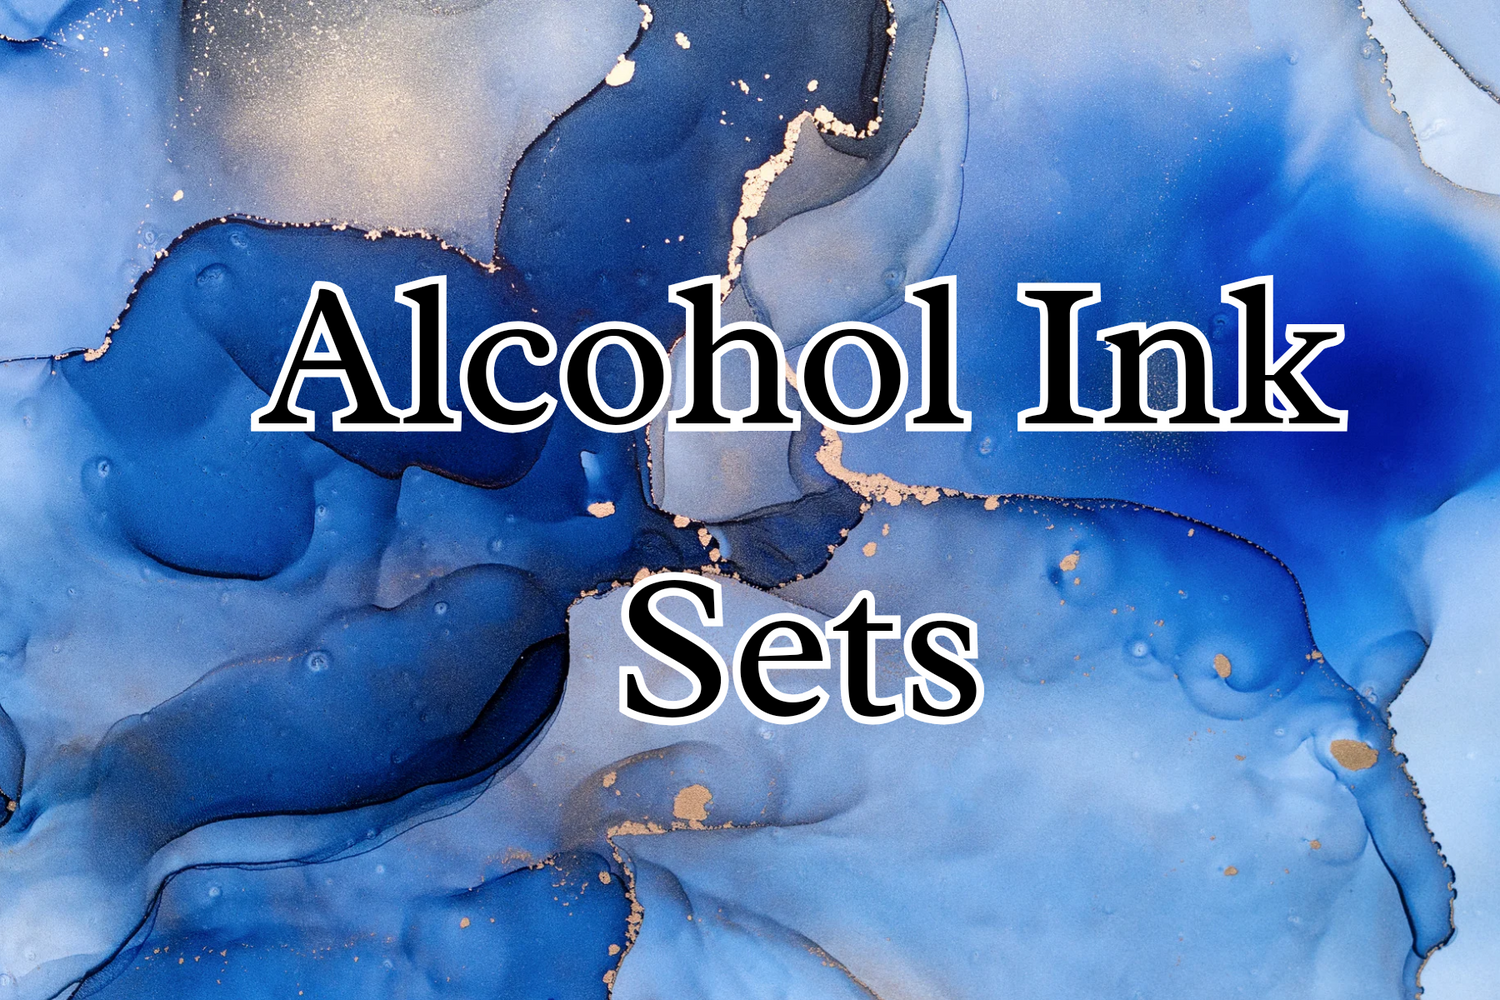 Alcohol Ink Sets